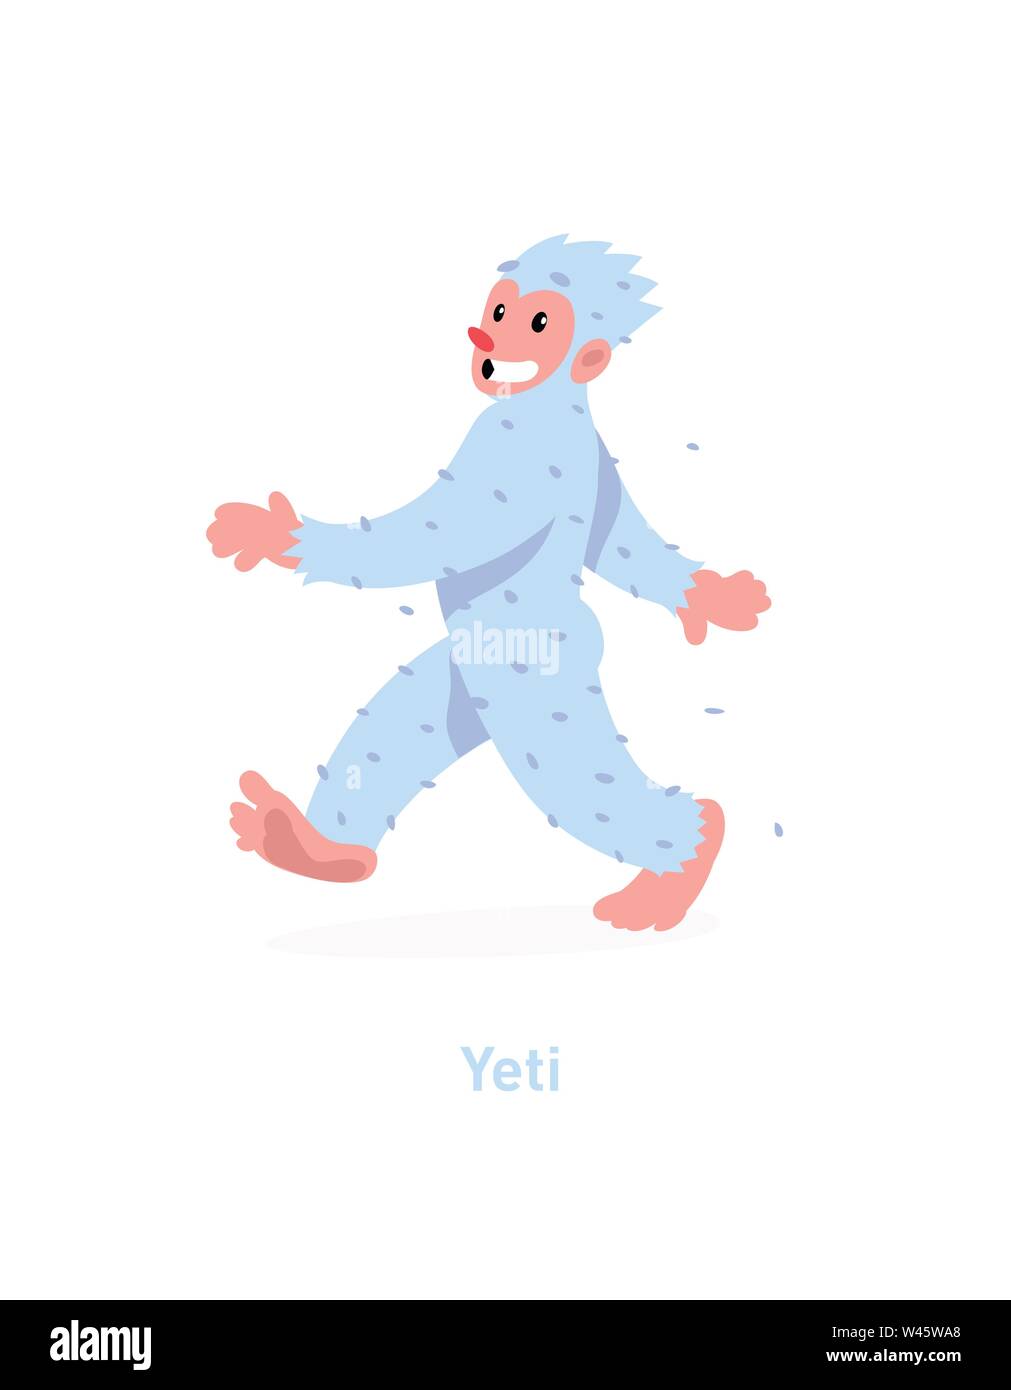 Ein Beispiel für eine Cartoon Yeti. Vector Illustration. Wenige weiße Yeti kommt. Das Bild ist auf weißem Hintergrund. Flache Mode illustrati Stock Vektor